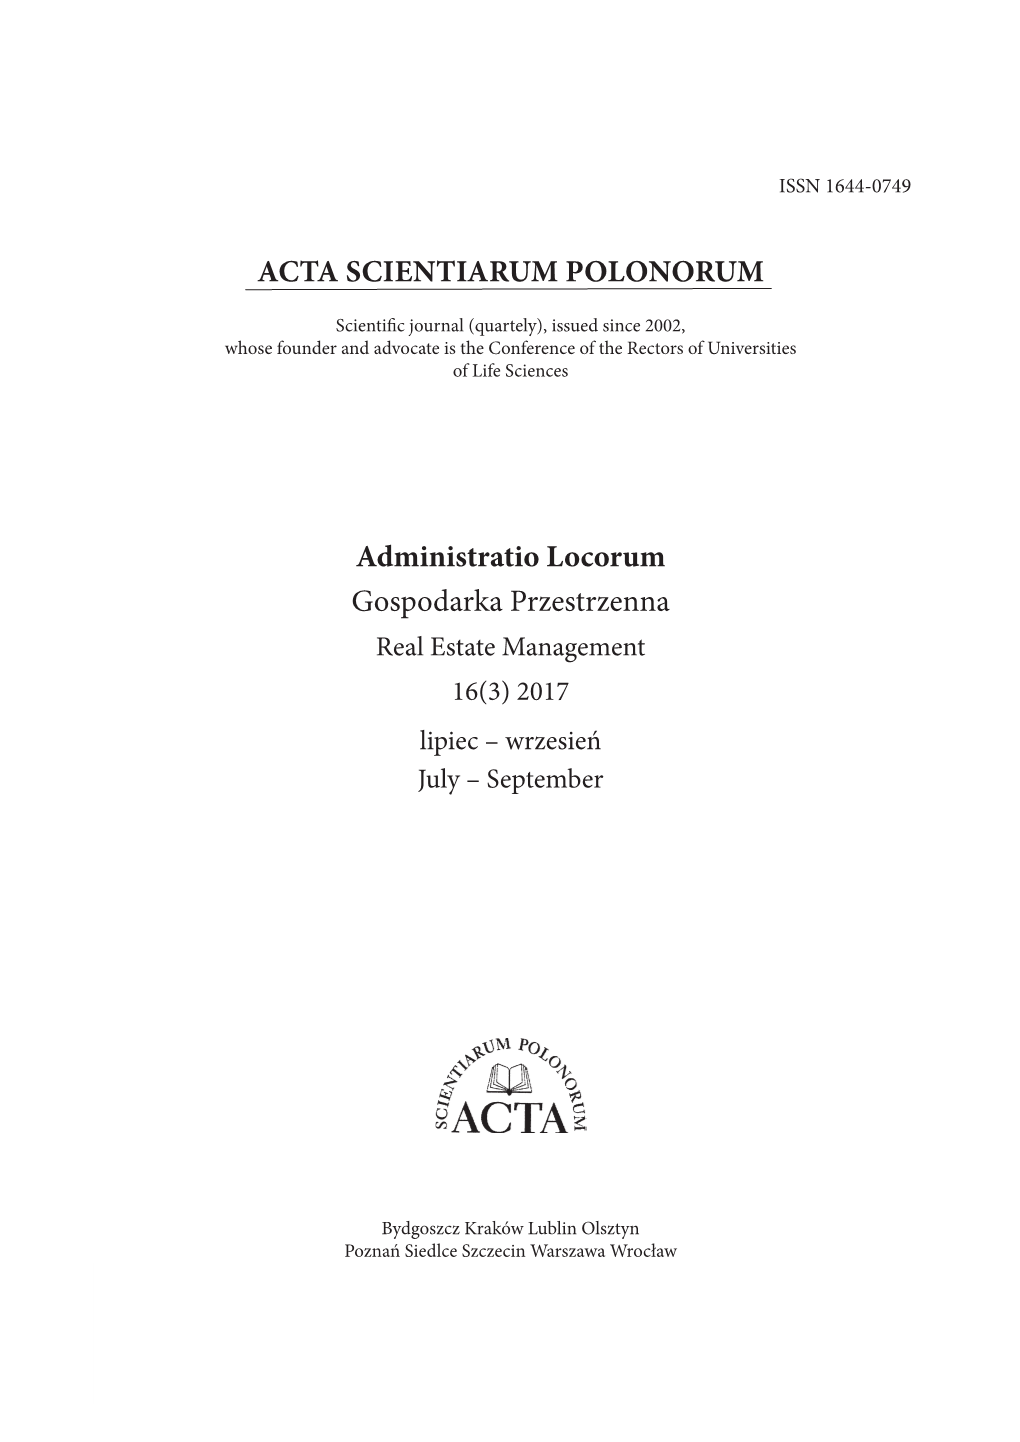 ACTA SCIENTIARUM POLONORUM Administratio Locorum Gospodarka